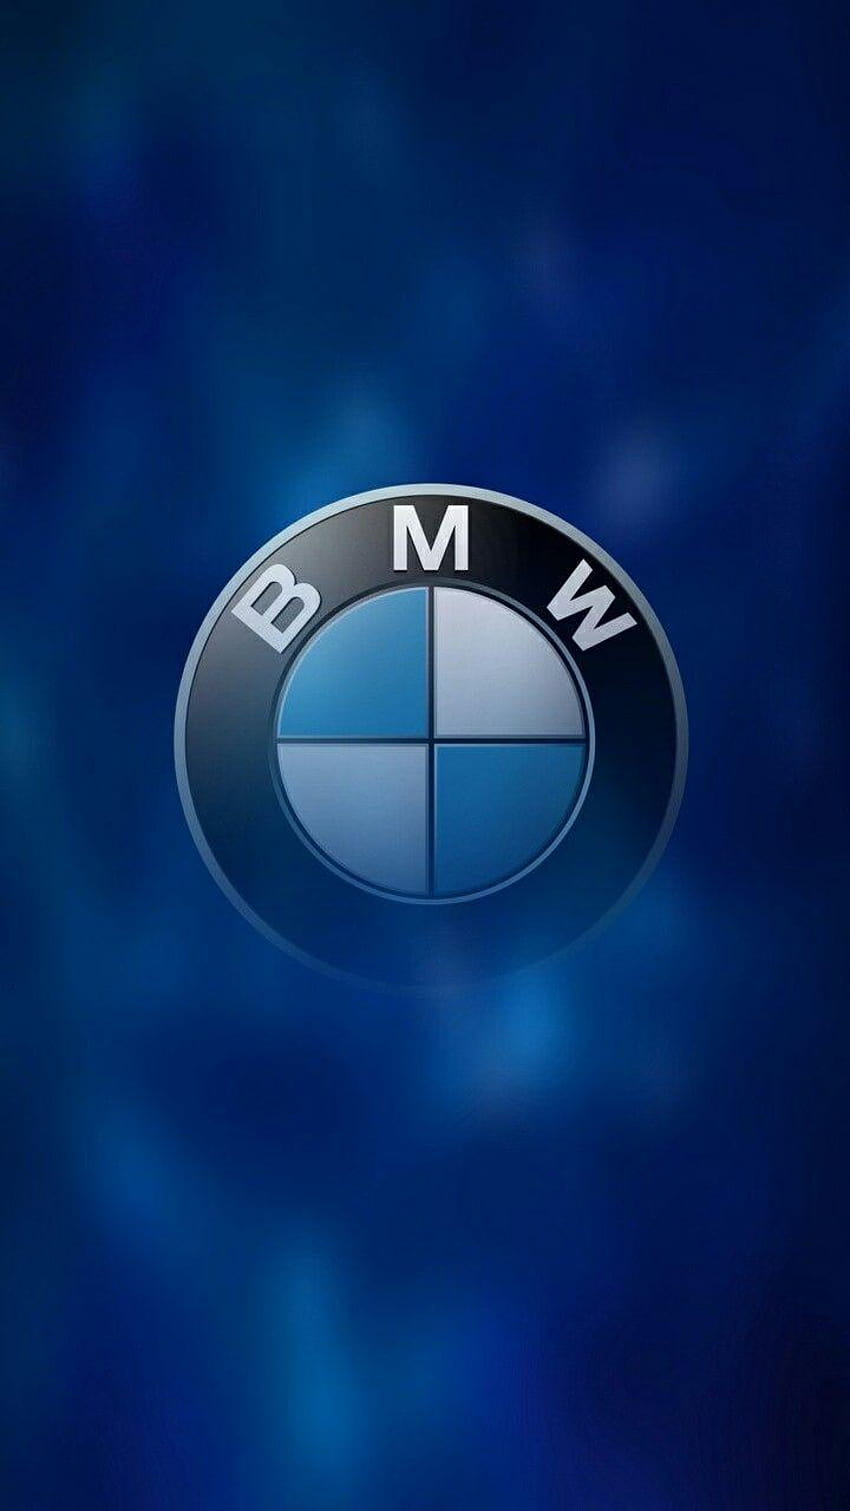 BMW versions ©by: ·║ Rhèñdý Hösttâ ║· thank you for, bm3 HD phone wallpaper